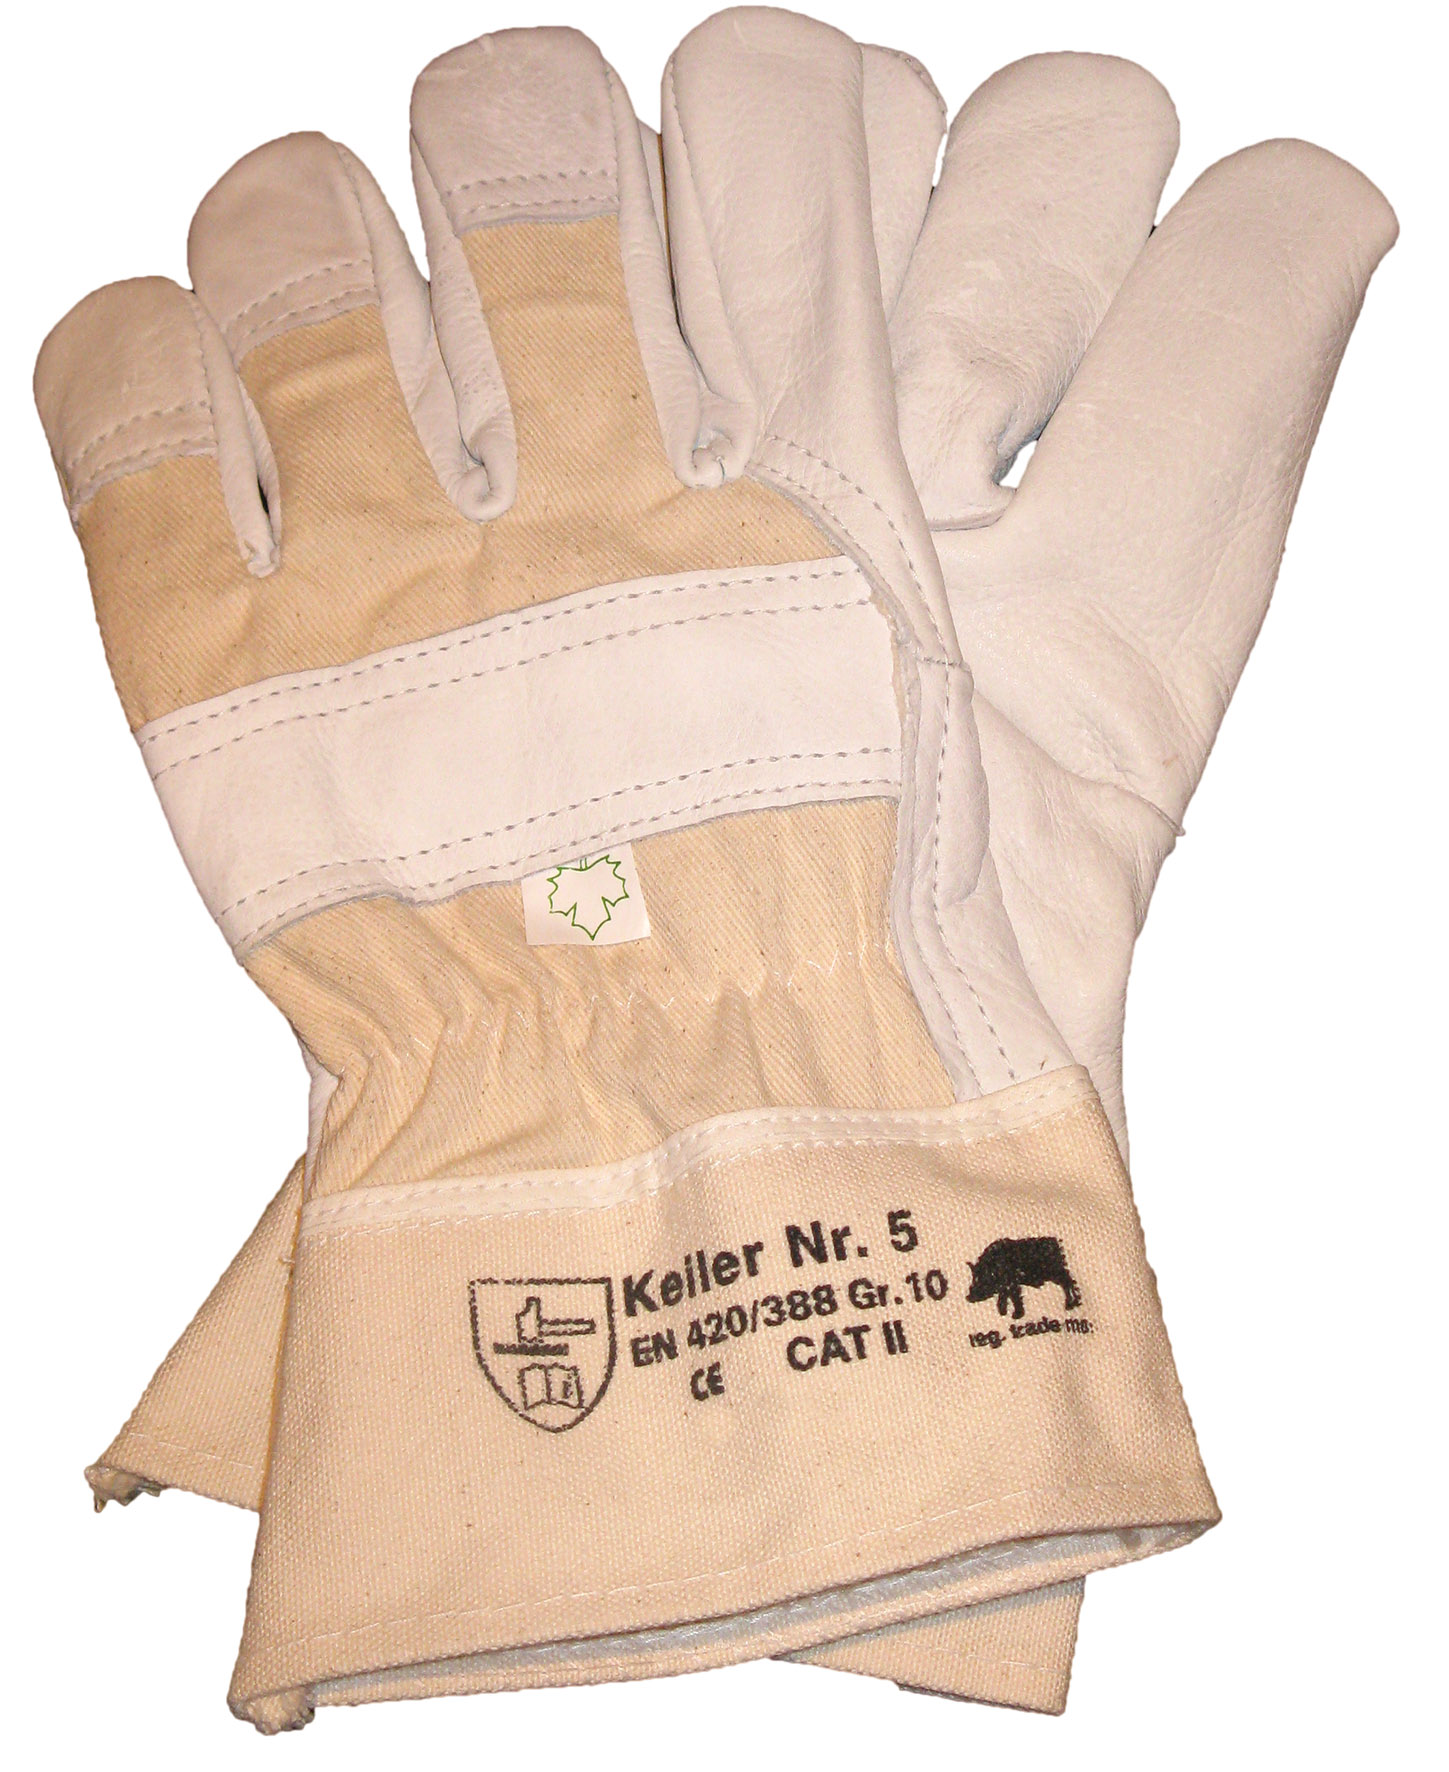 Schutz-Handschuh Keiler Nr. 5 aus Rindnarbenleder